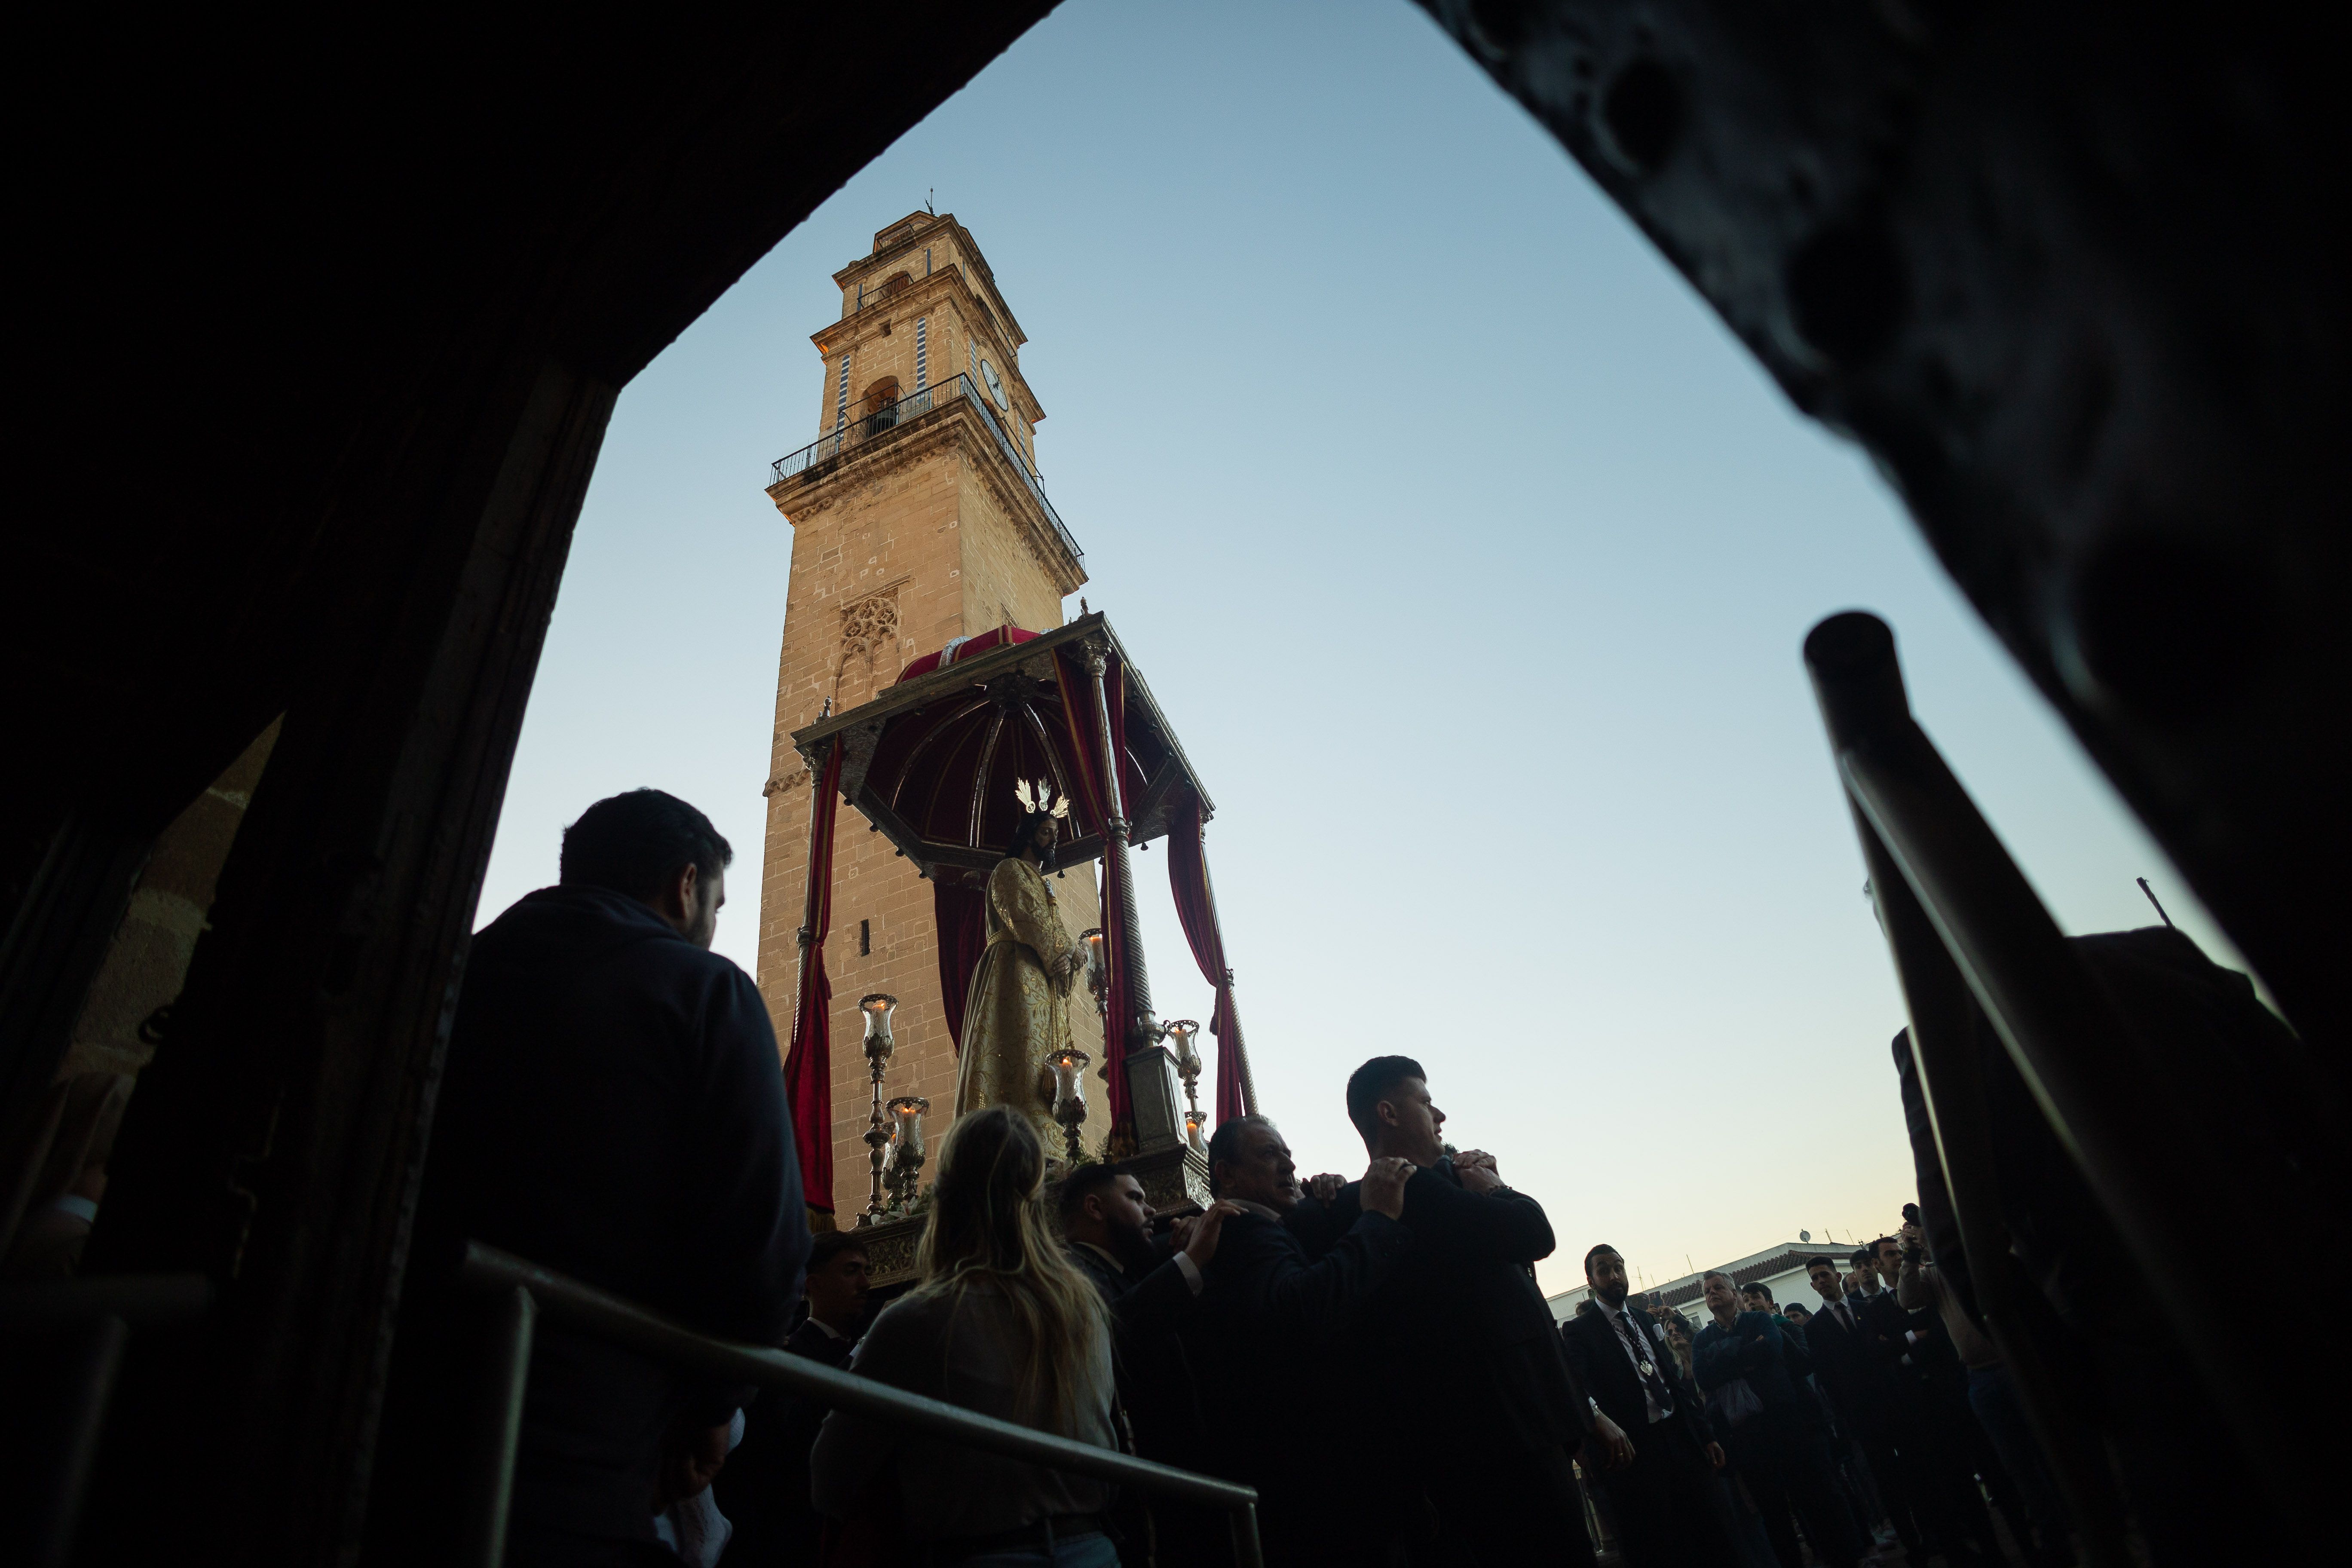 El Consuelo bajo el templete de la Merced entrando en la Seo con la torre campanario al fondo.